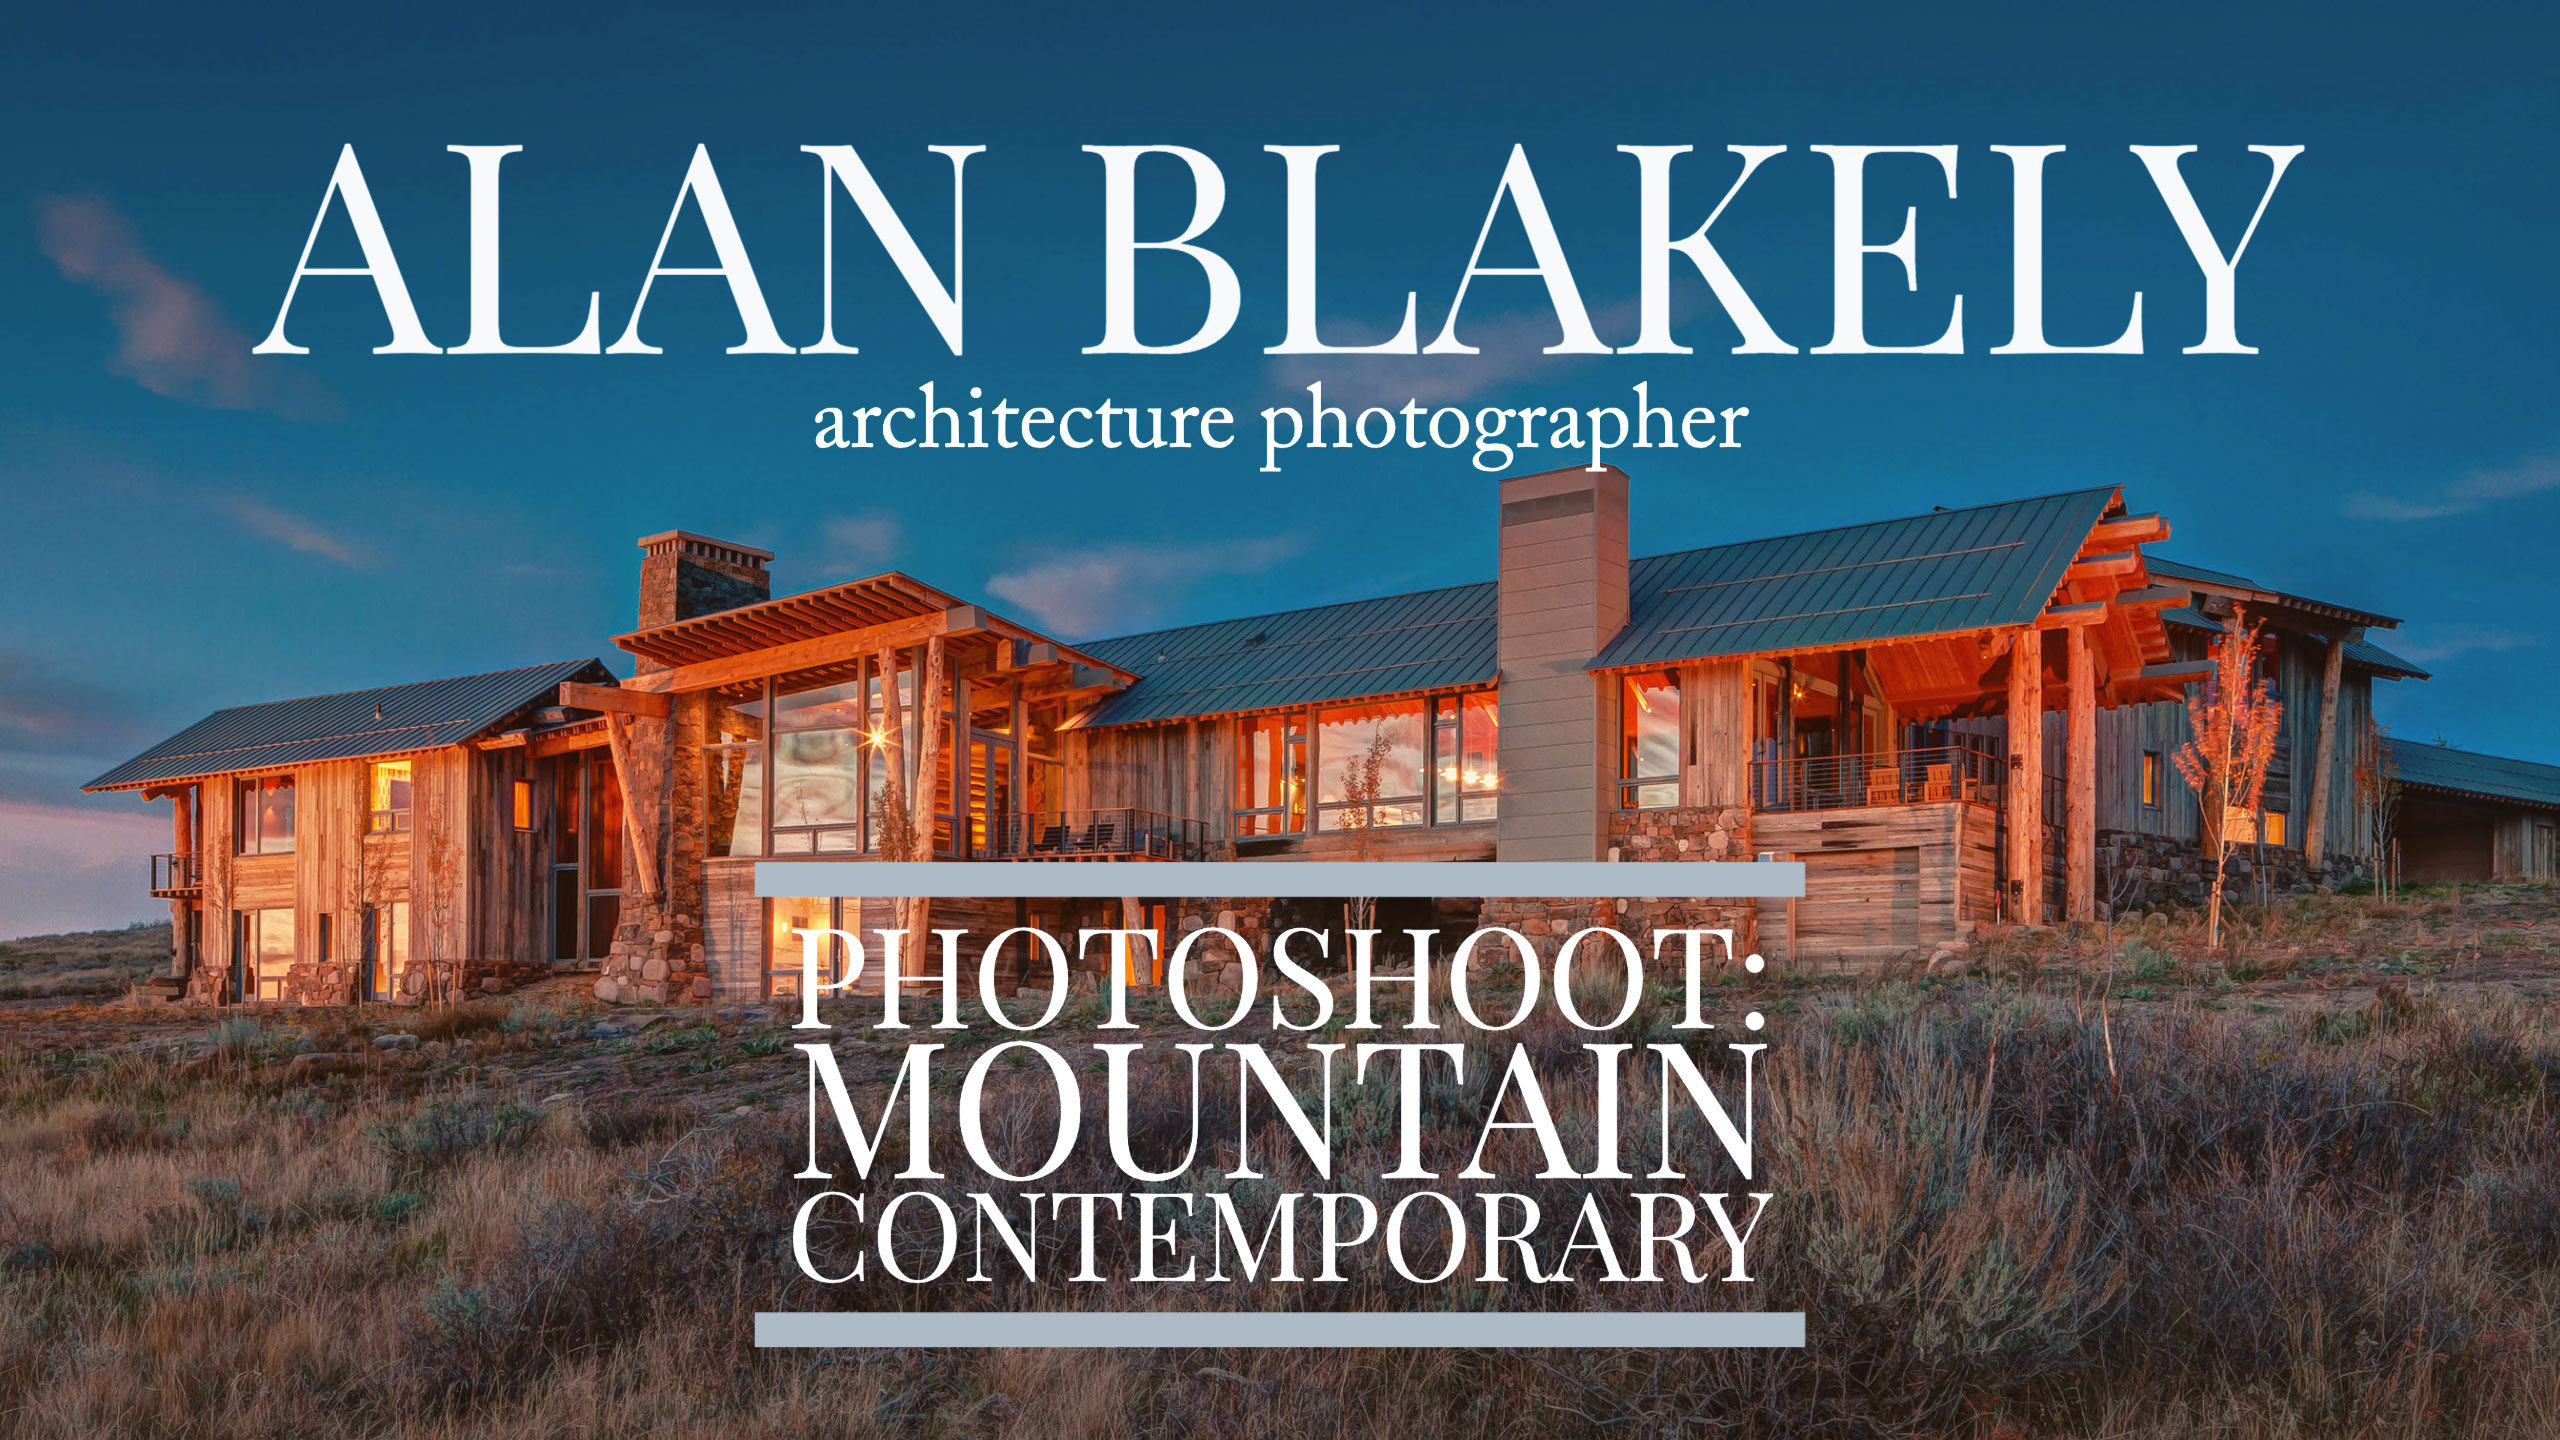 Photoshoot: Mountain Contemporary